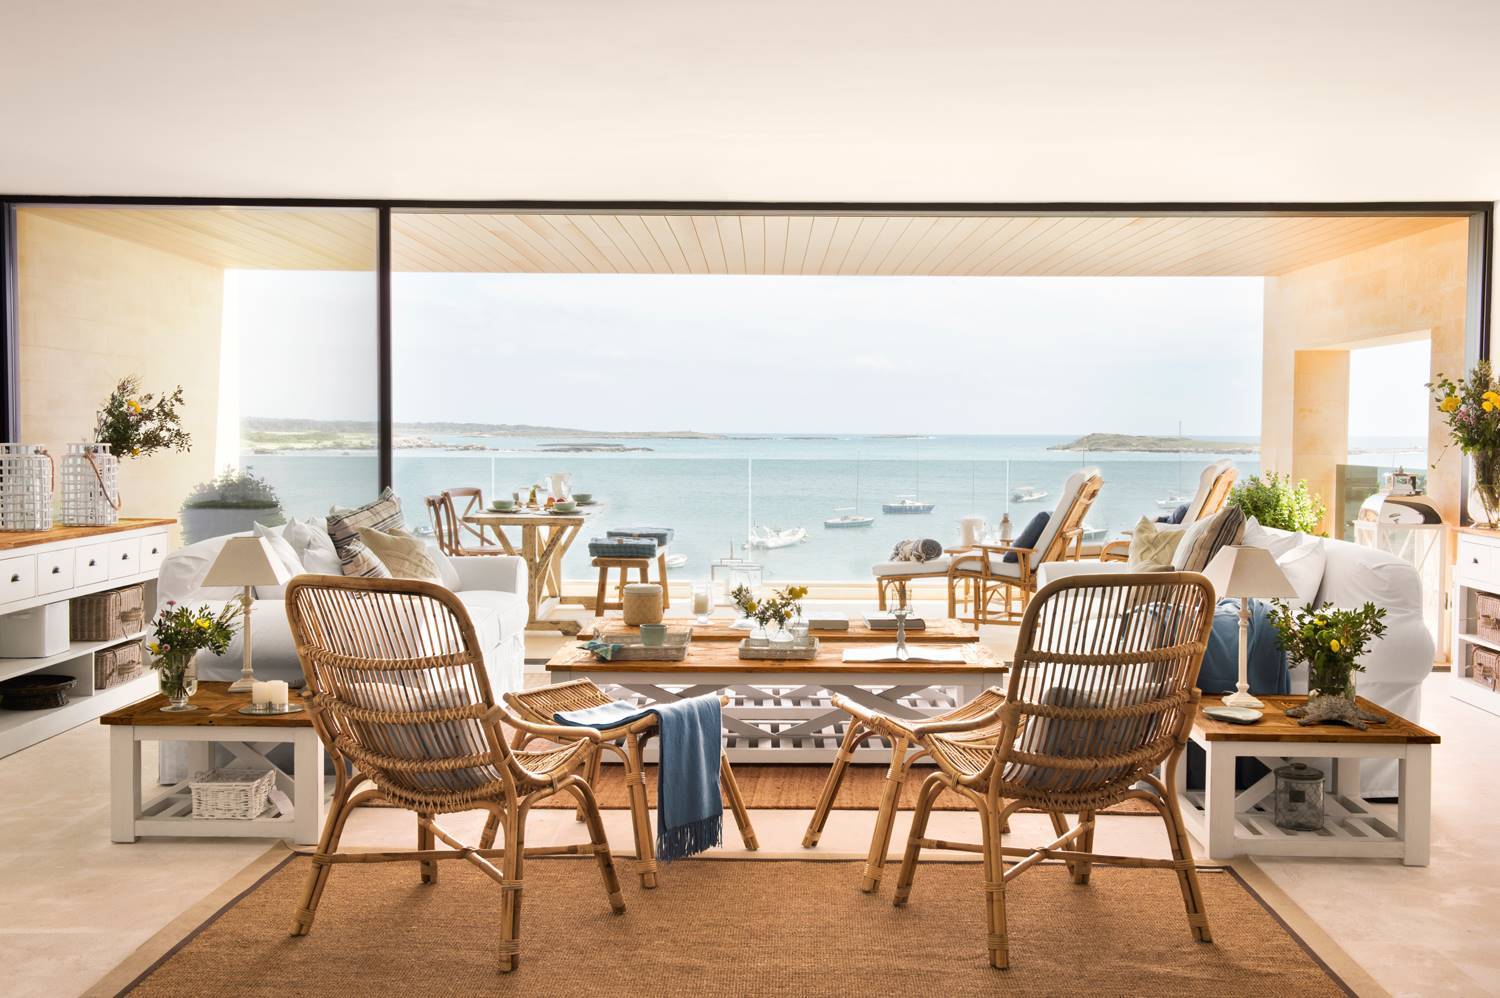 salon gran ventanal mirando al mar y muebles fibras naturales 454170